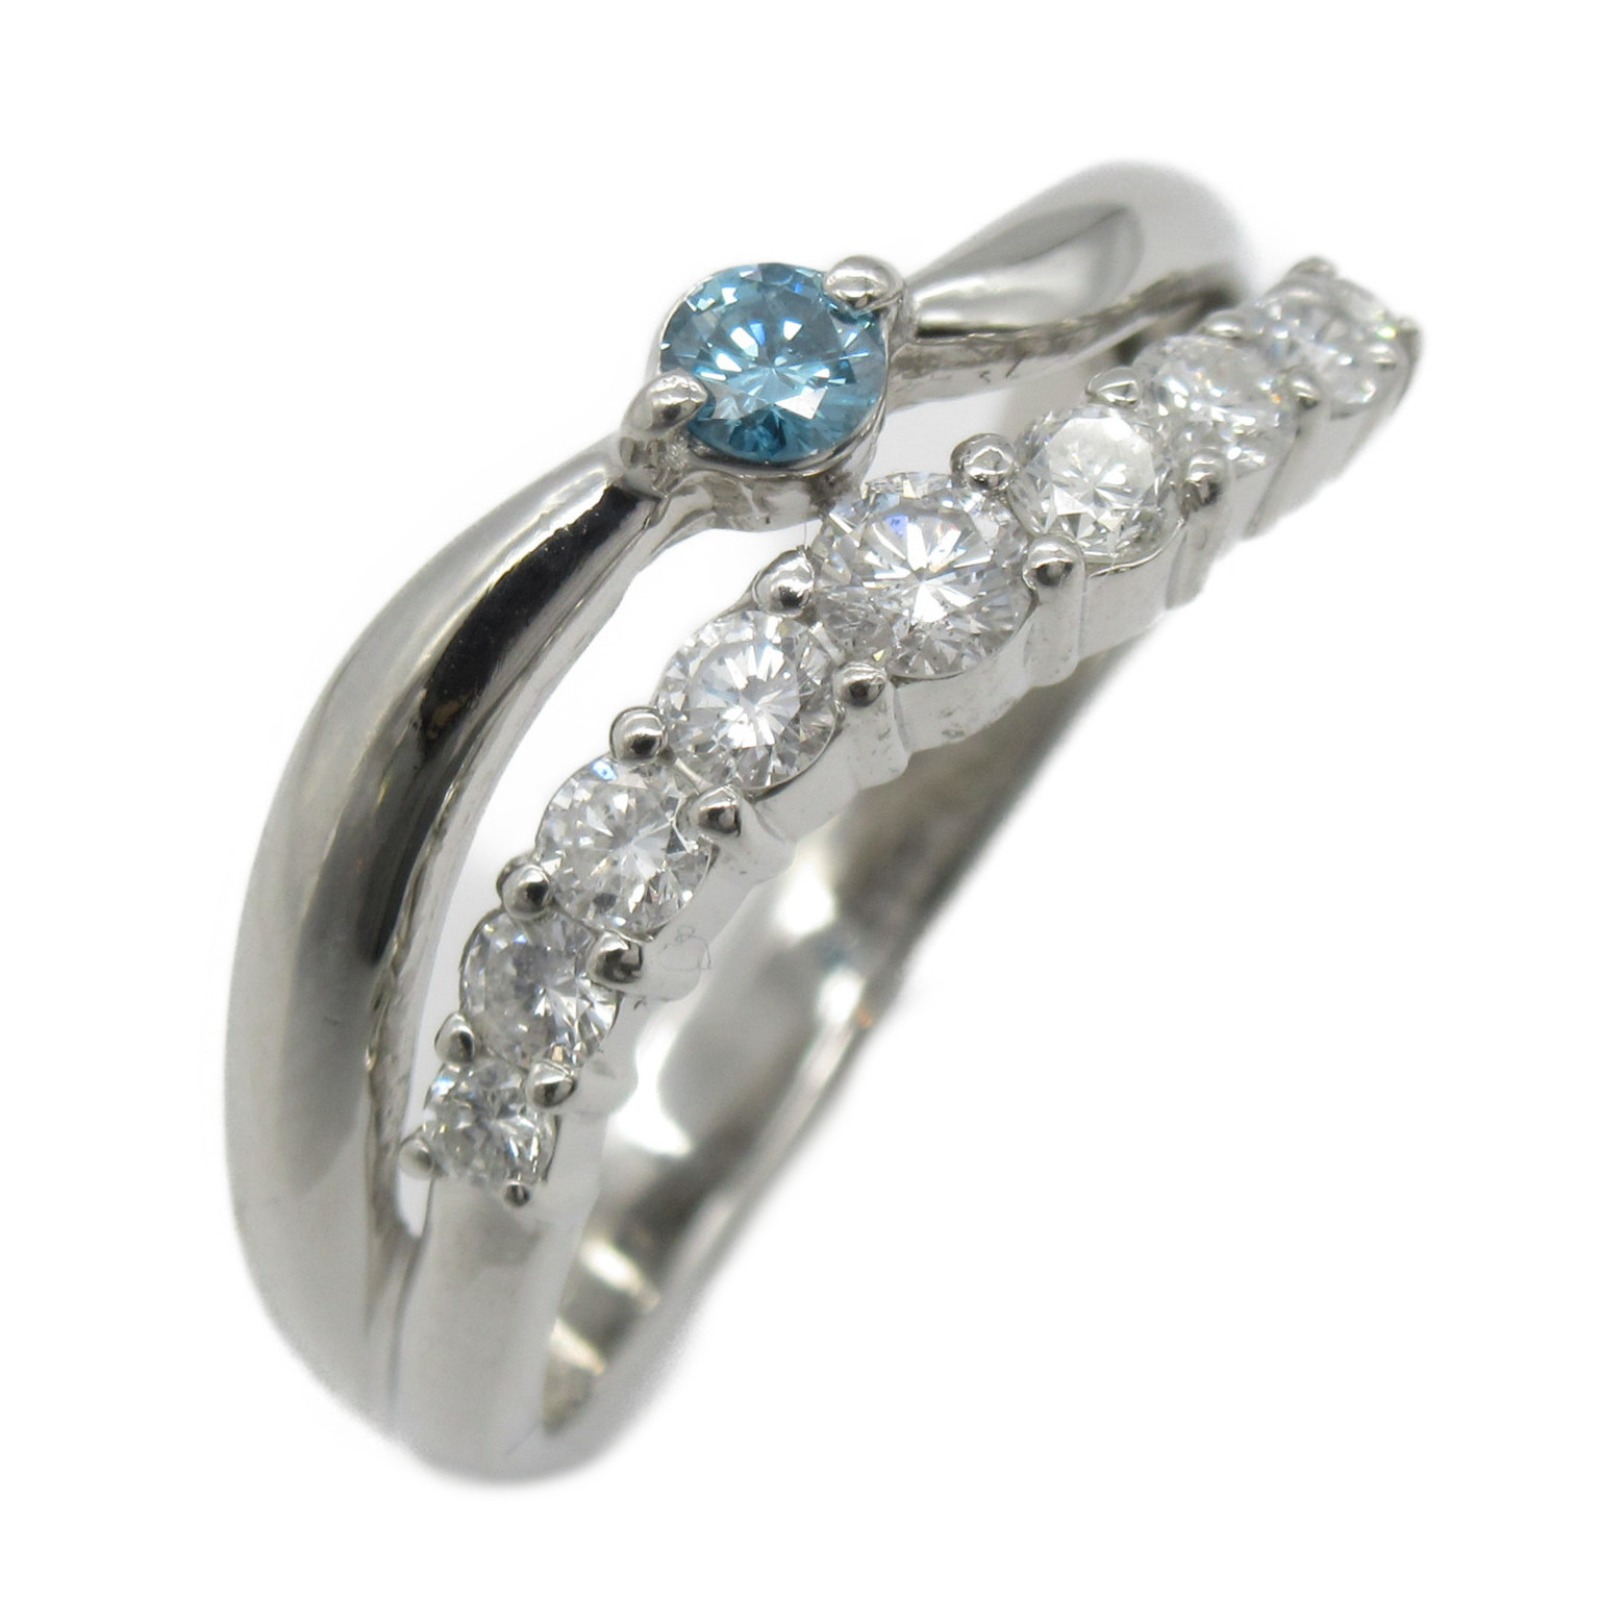 ファッションの ジュエリー JEWELRY ダイヤモンド 指輪 リング Pt900プラチナ レディース クリア系 ダイヤ 5.1g ブランド  アクセサリー